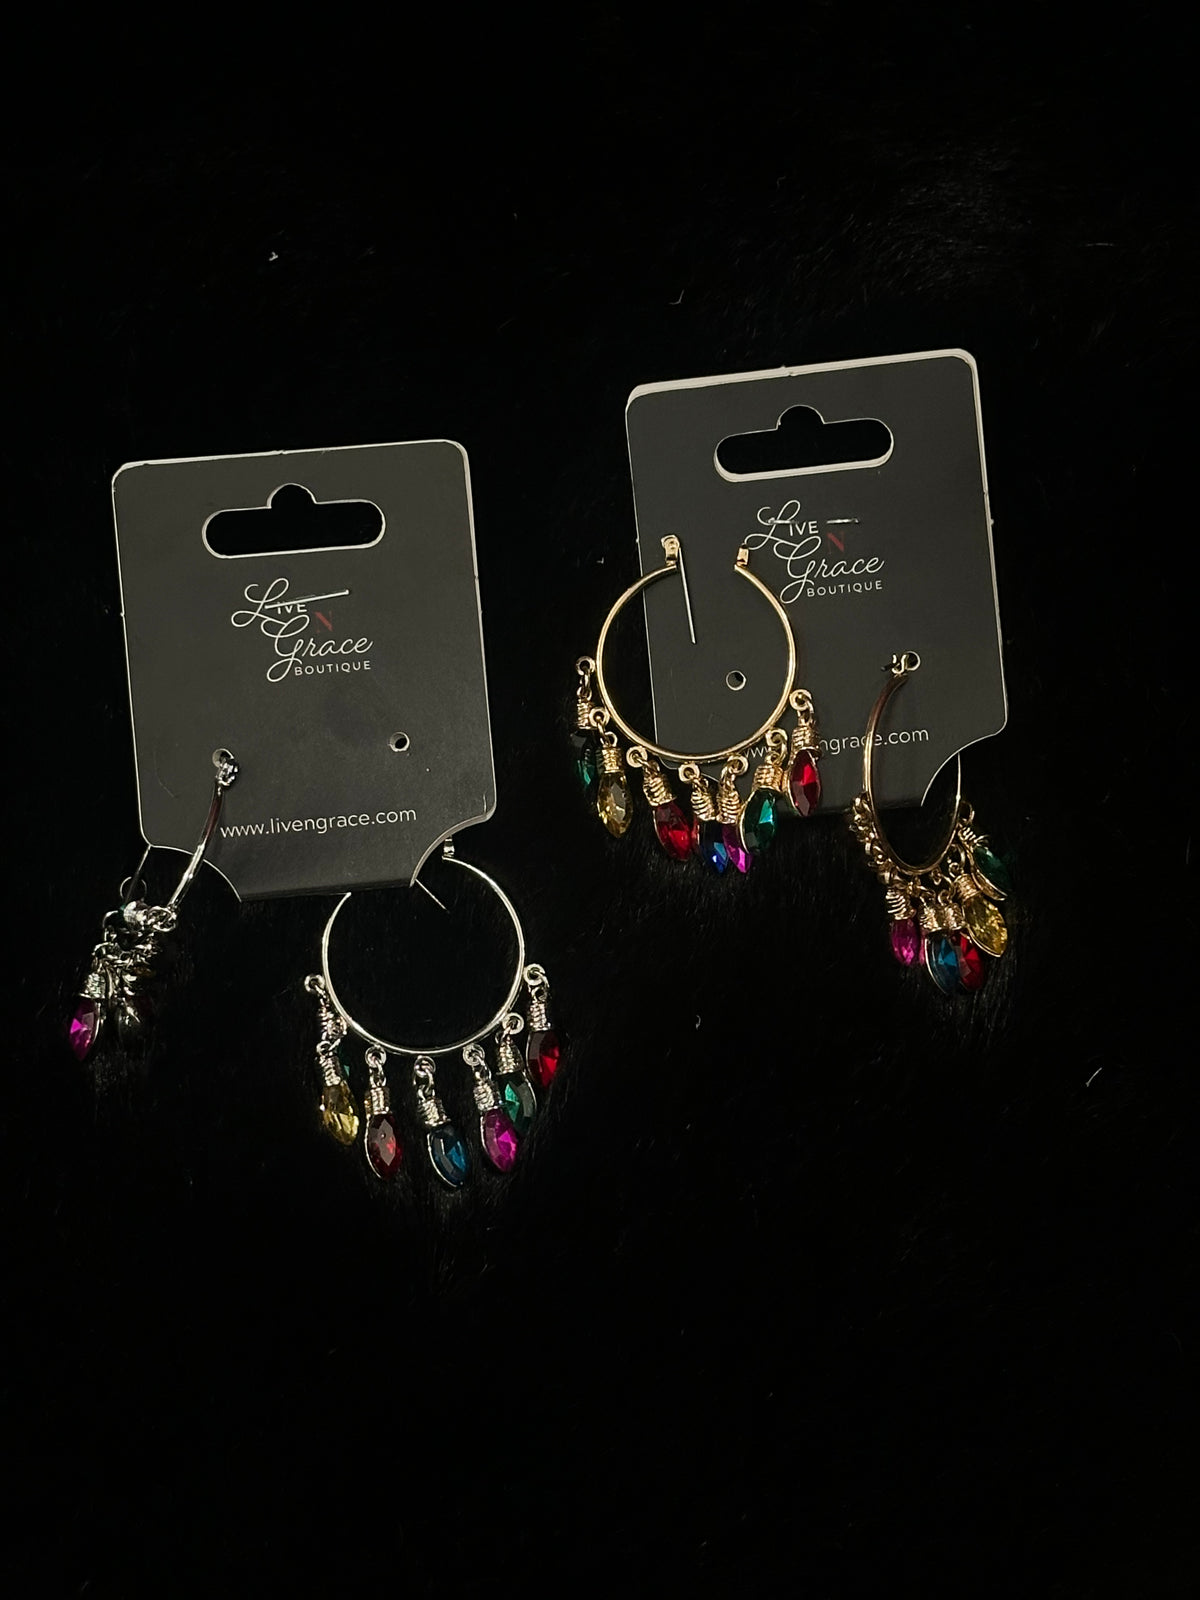 Christmas light earrings